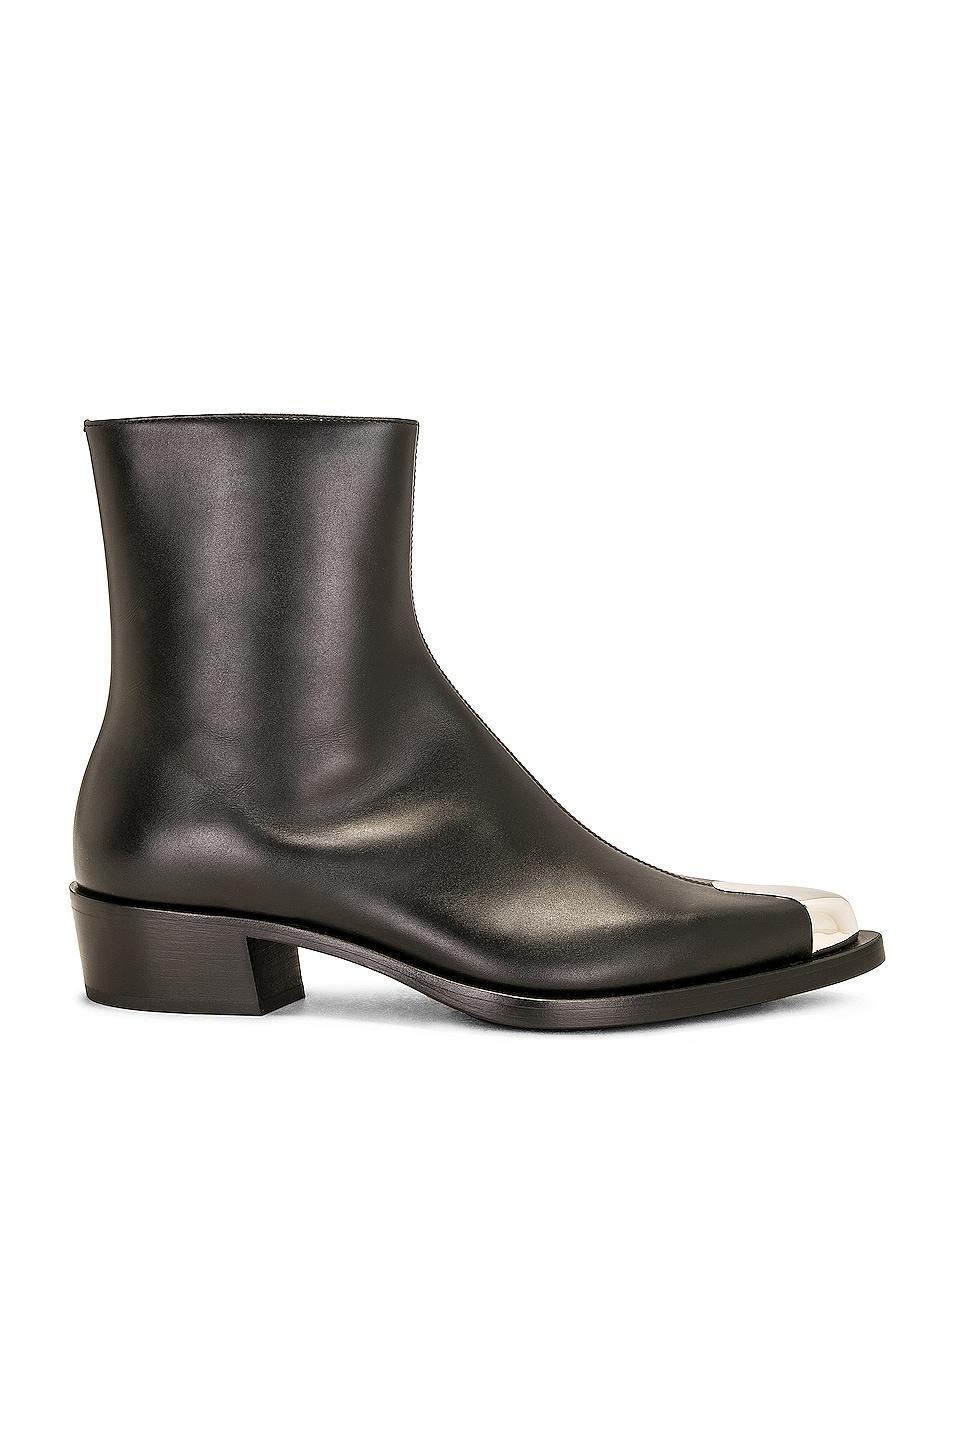 Alexander McQueen Boot in Black Product Image